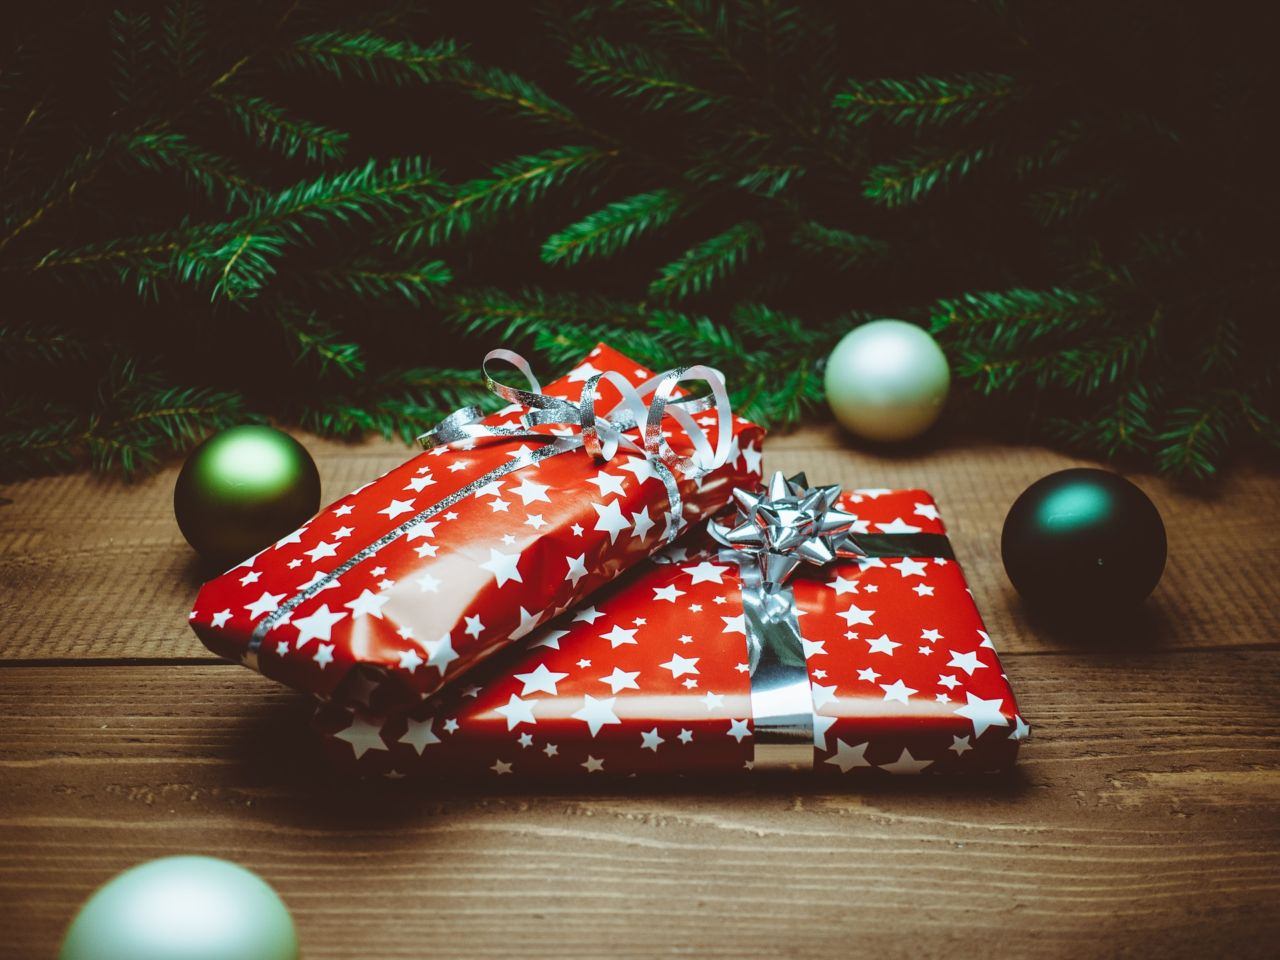 Weihnachtszeit ist auch Geschenkezeit. Doch was schenkt man?